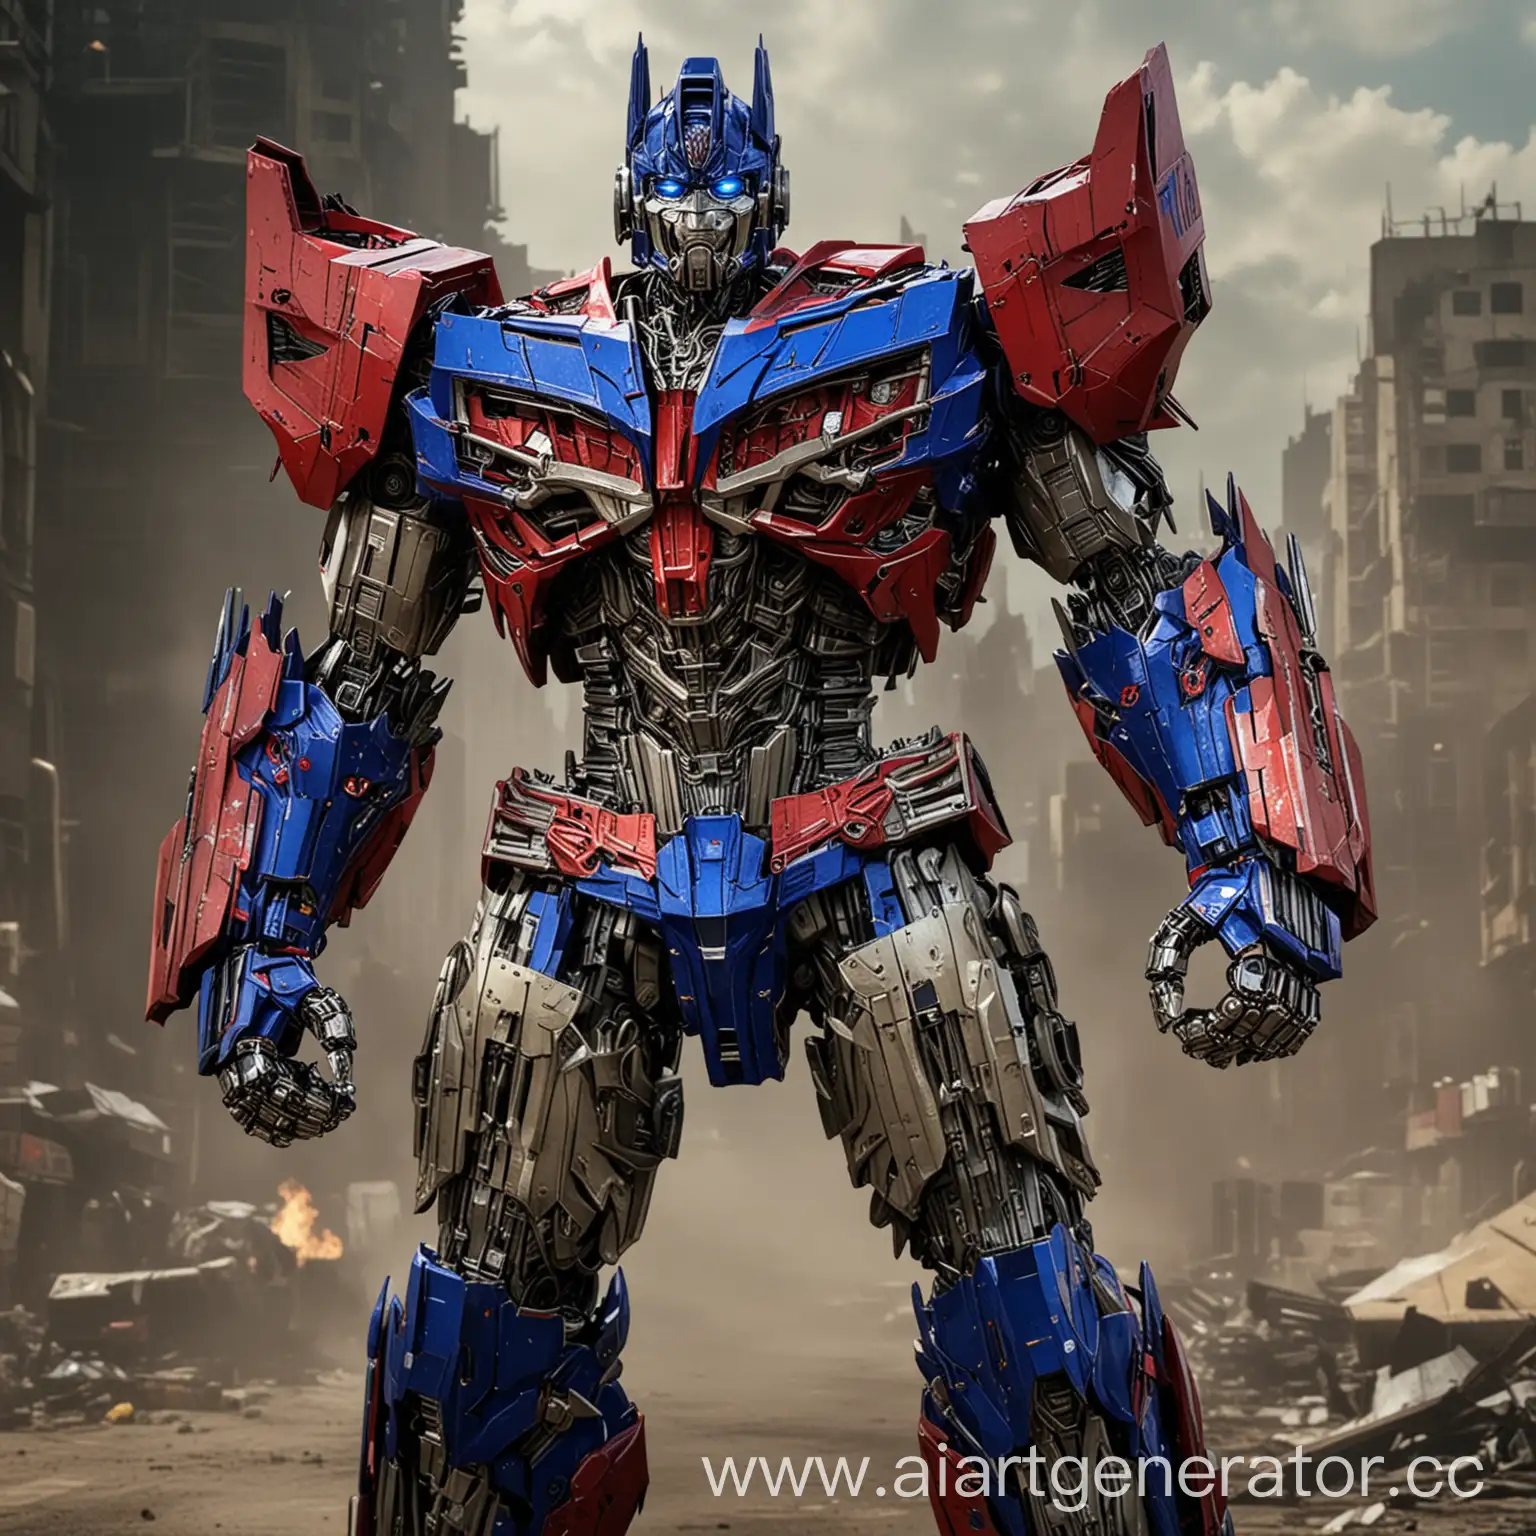 Transformers-8-Epic-Battle-of-Optimus-Prime-and-Villainous-Forces